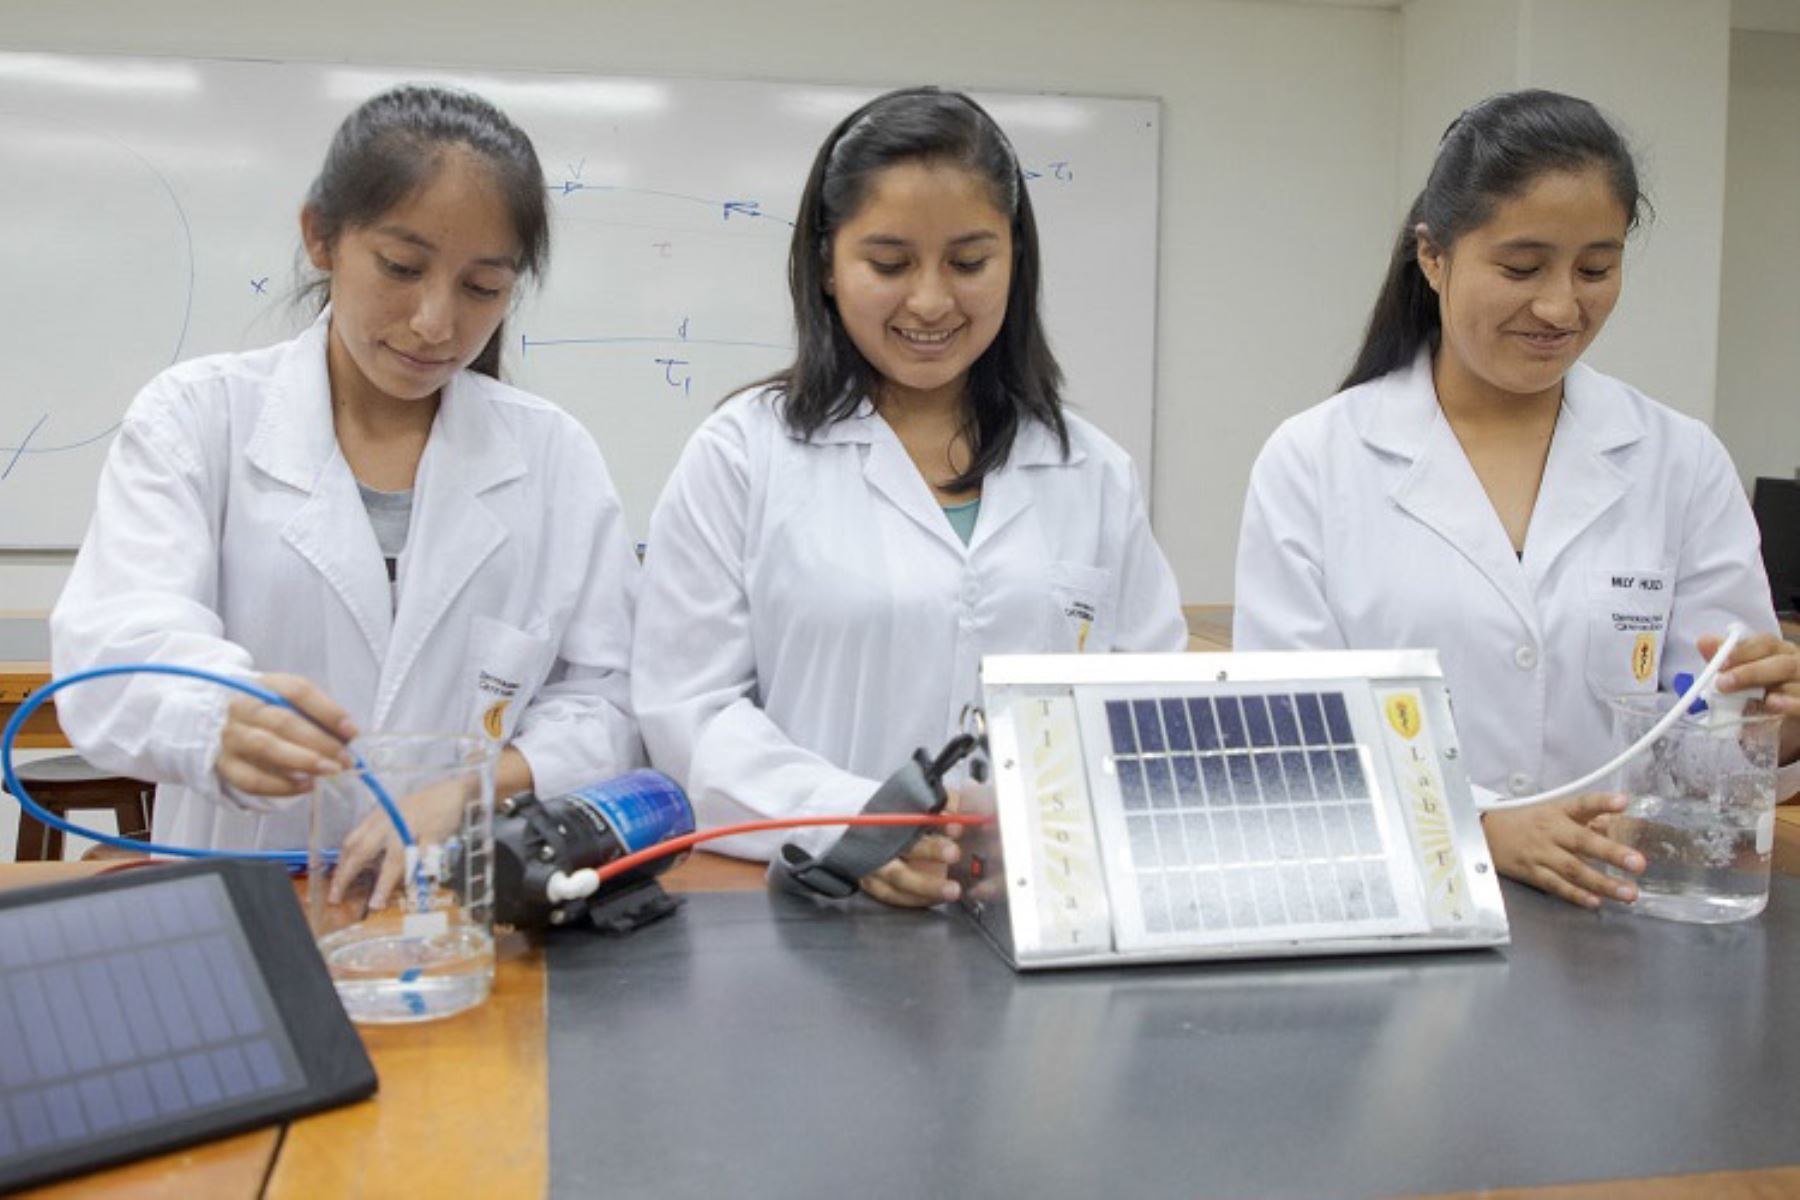 El perfil del mentor o mentora debe alcanzar un mínimo de cinco años de experiencia profesional en áreas STEM (biomedicina, química, matemáticas o física), tener una formación académica relevante al sector de CTI y comprender las brechas e inequidad científicas en el Perú.